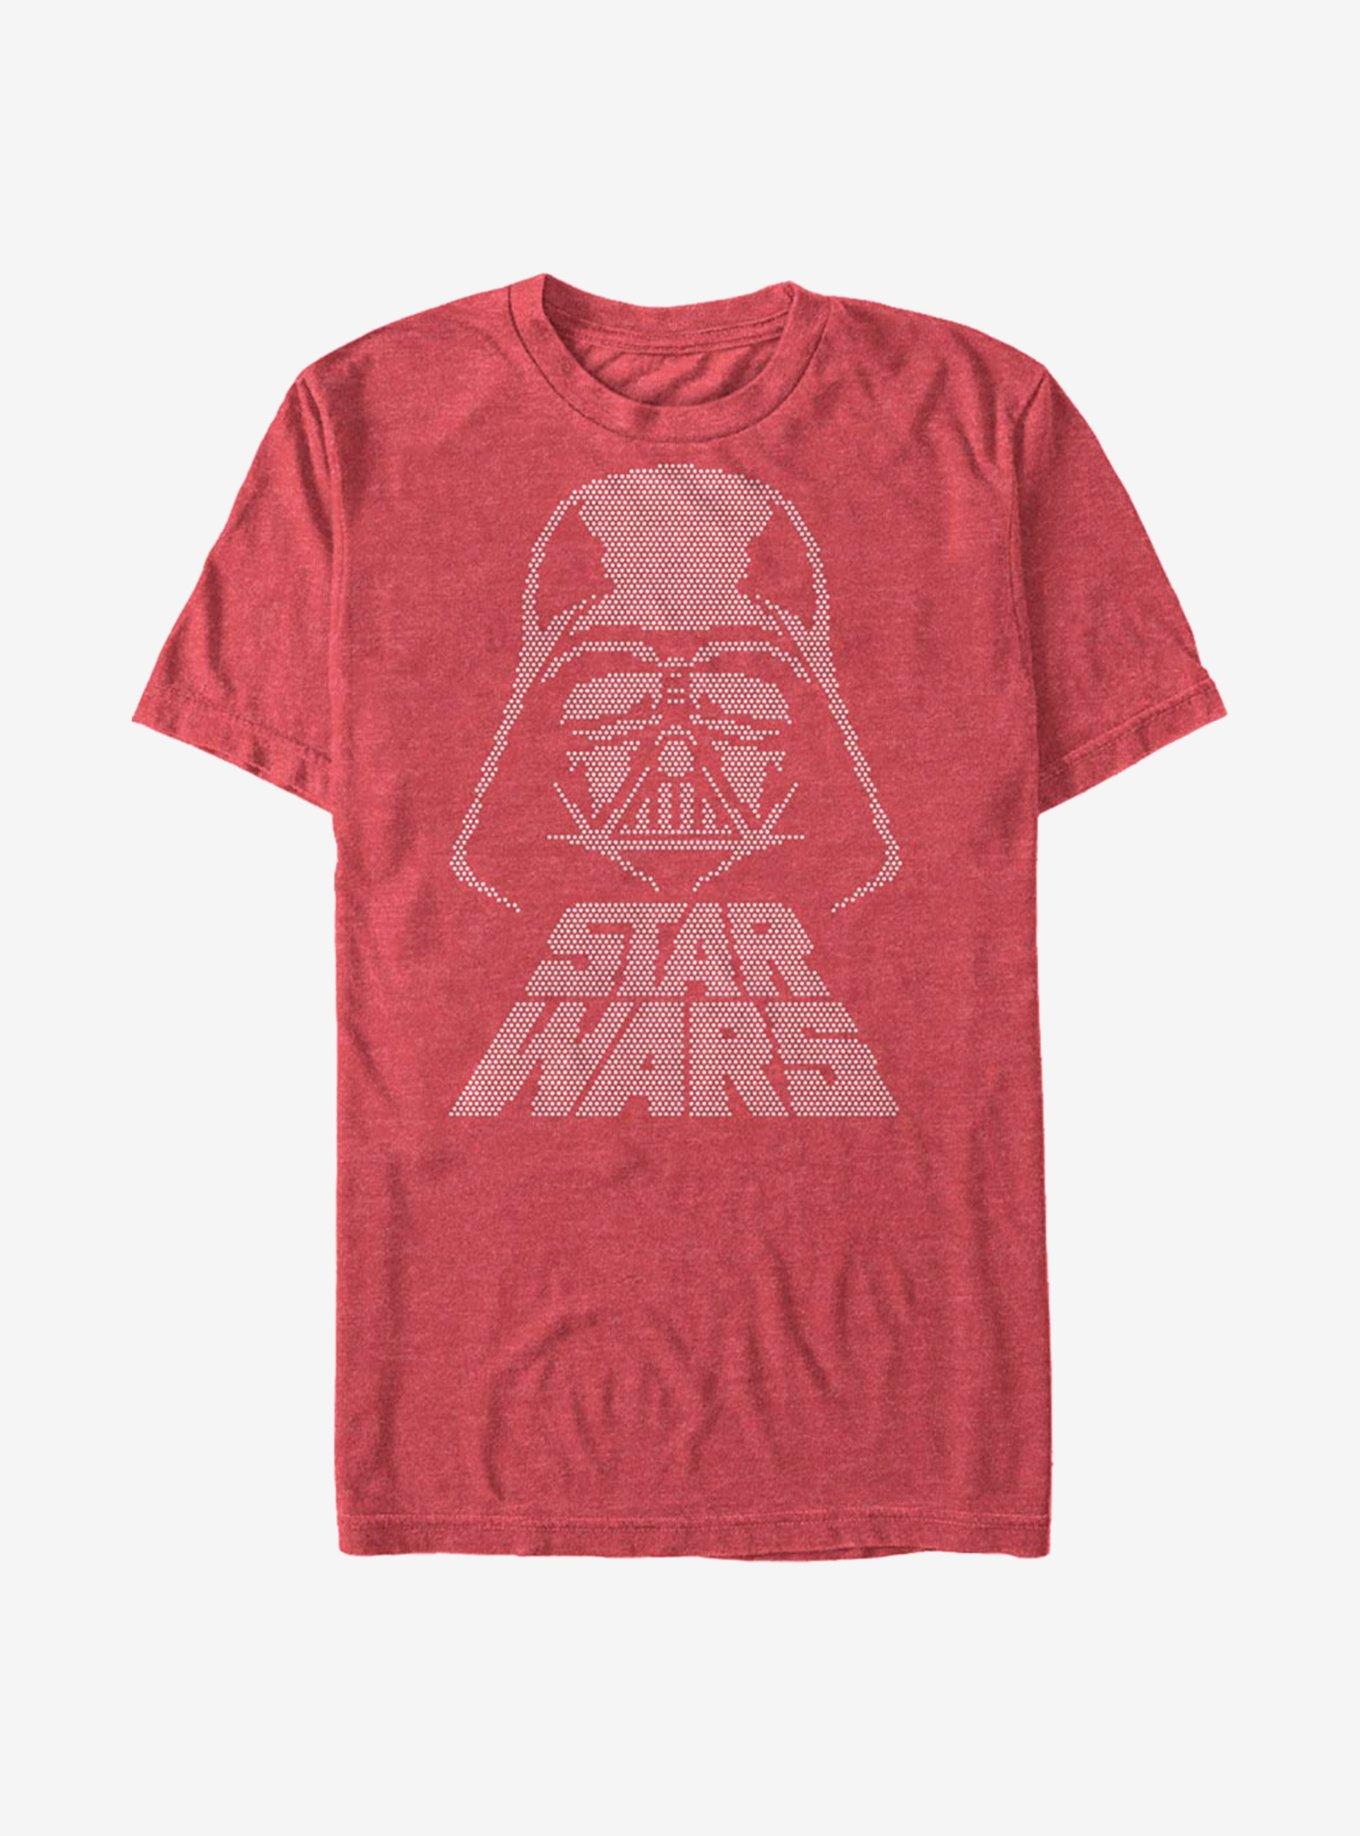 Star Wars Dot Vader T-Shirt, RED HTR, hi-res